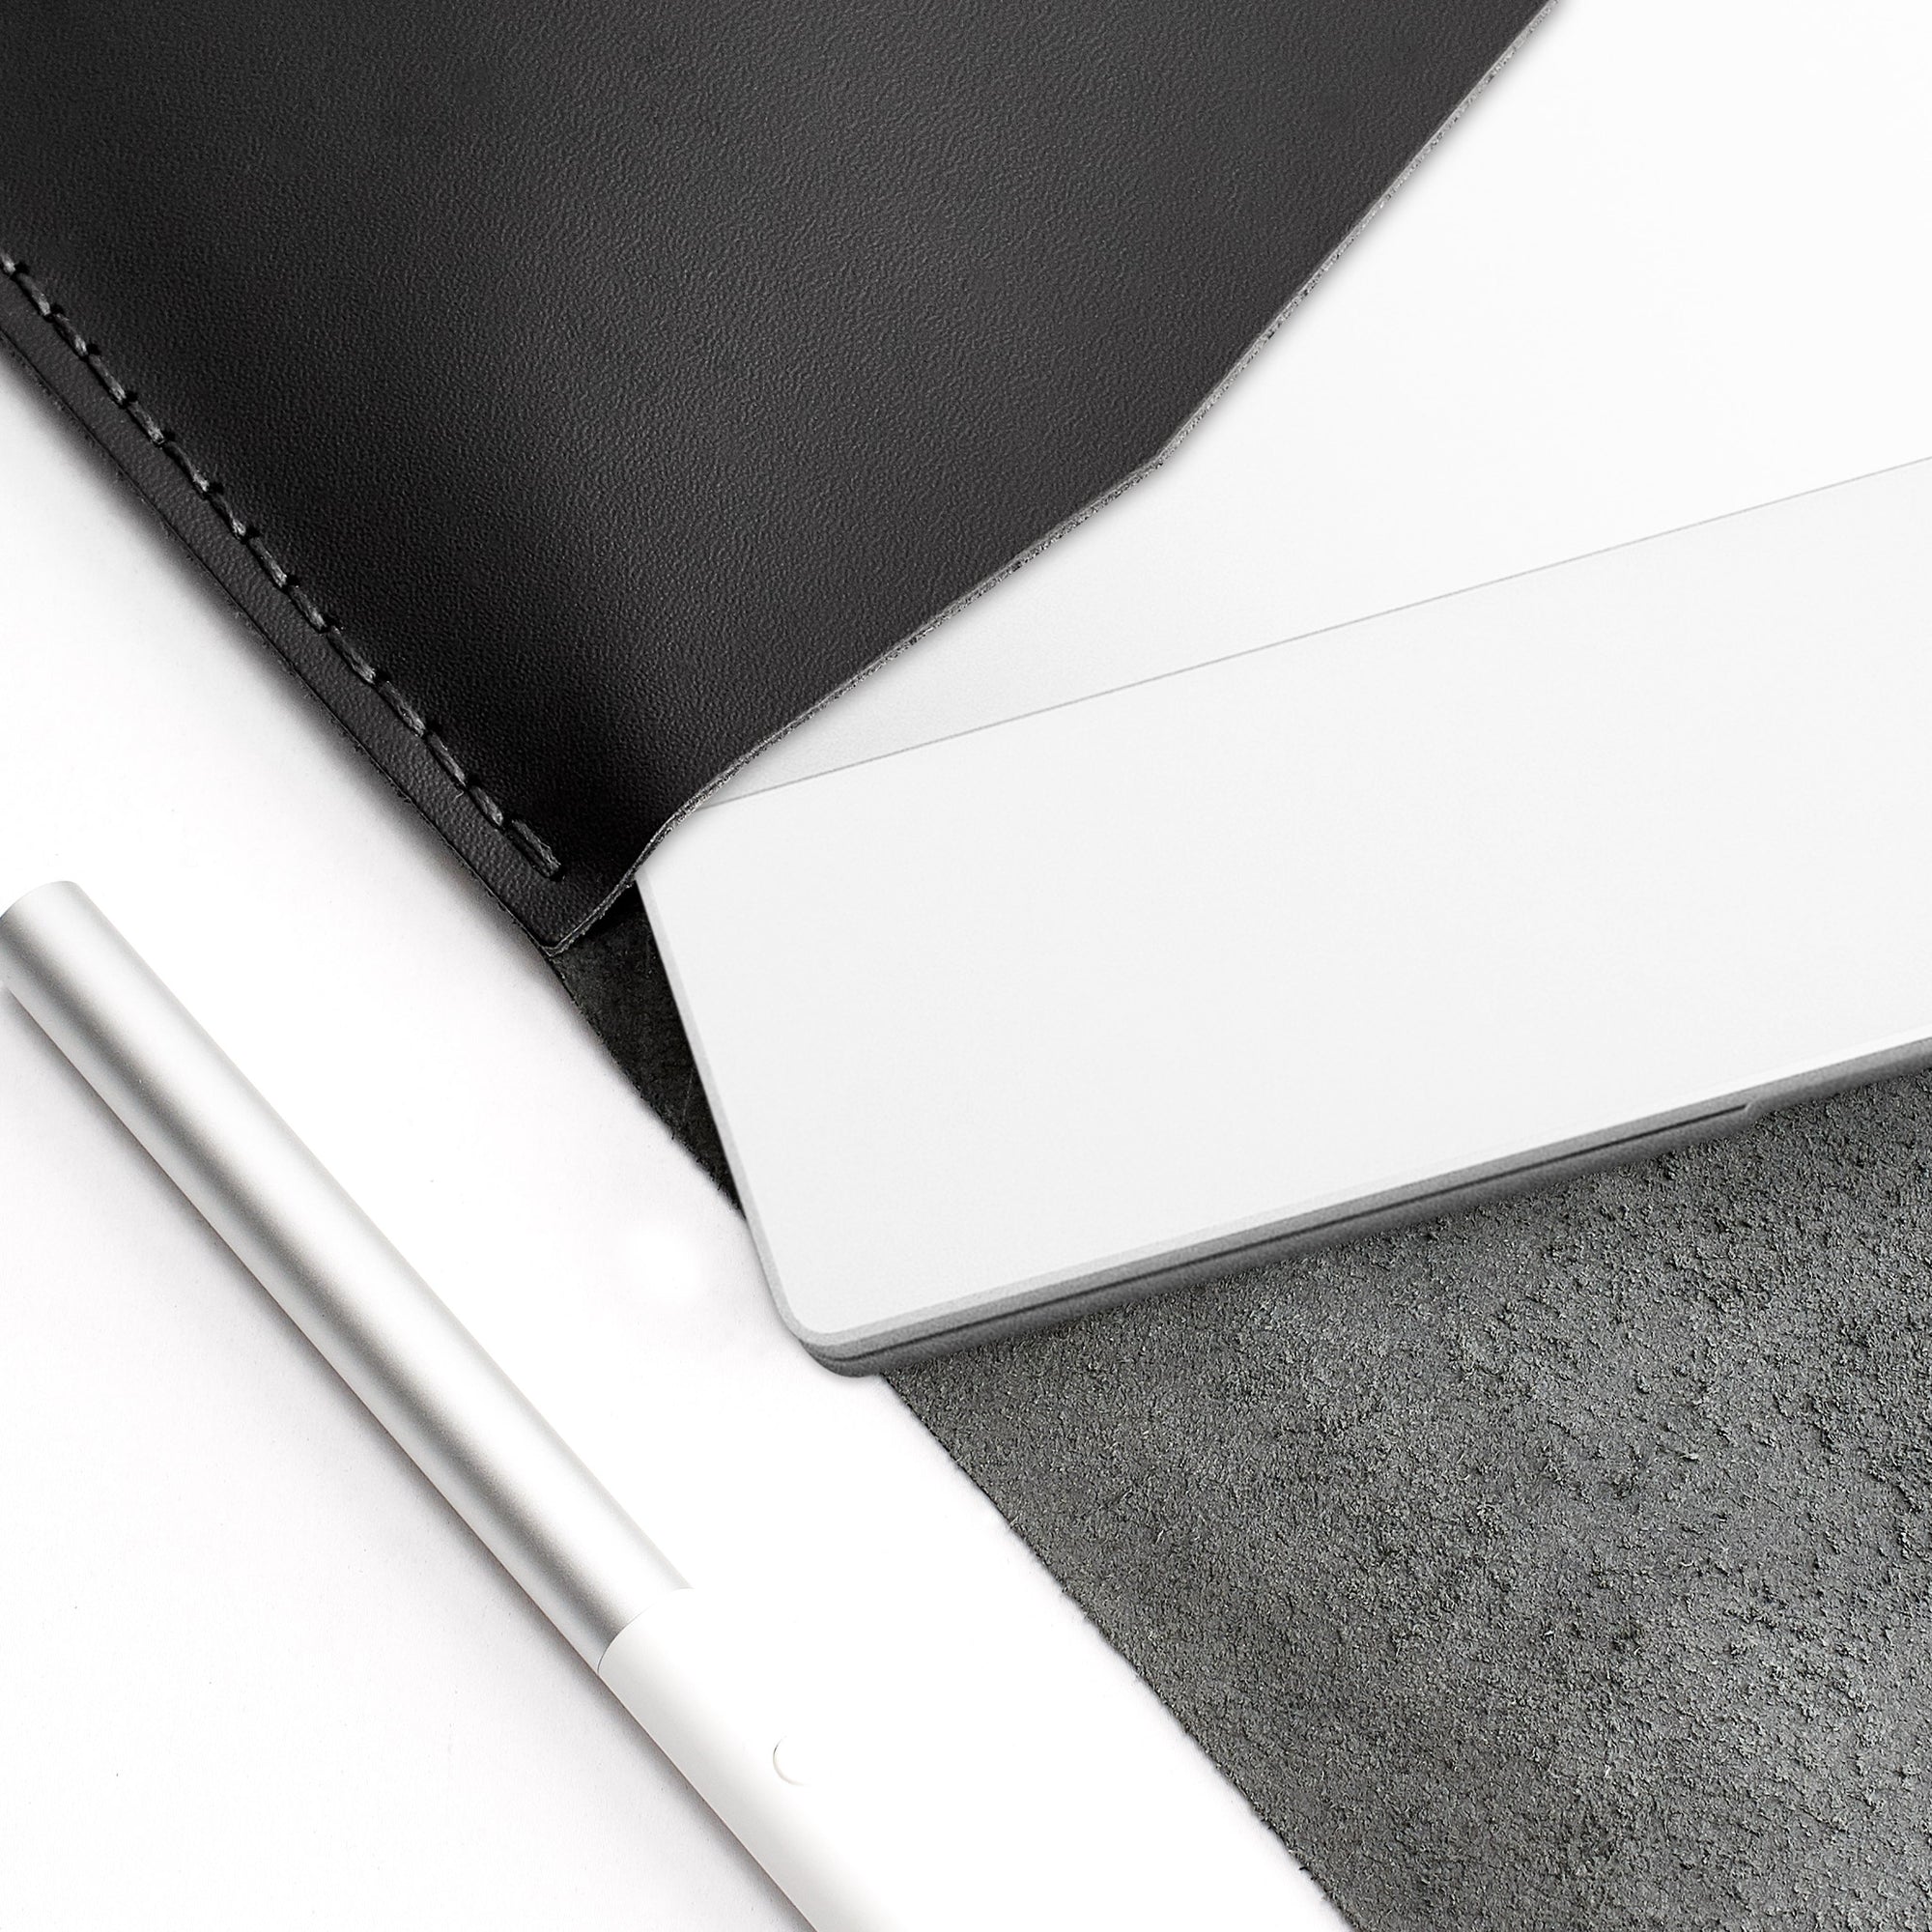 Handstitch detail. Google Pixel Slate Black leather case with pen holder. Pixel Slate laptop mens folio